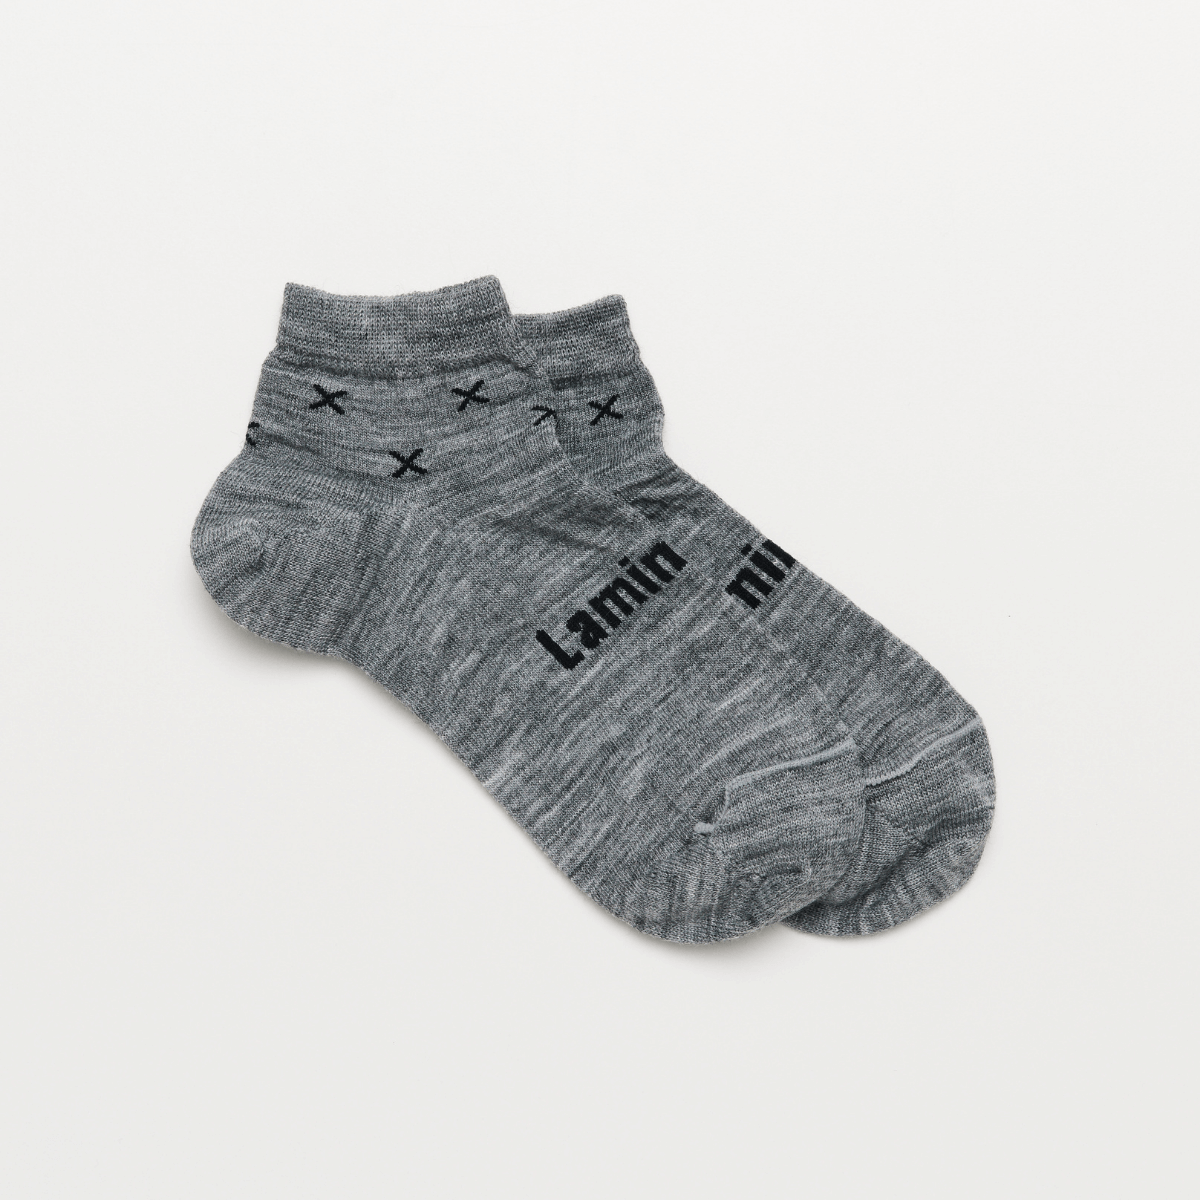 merino wool ankle socks grey and black